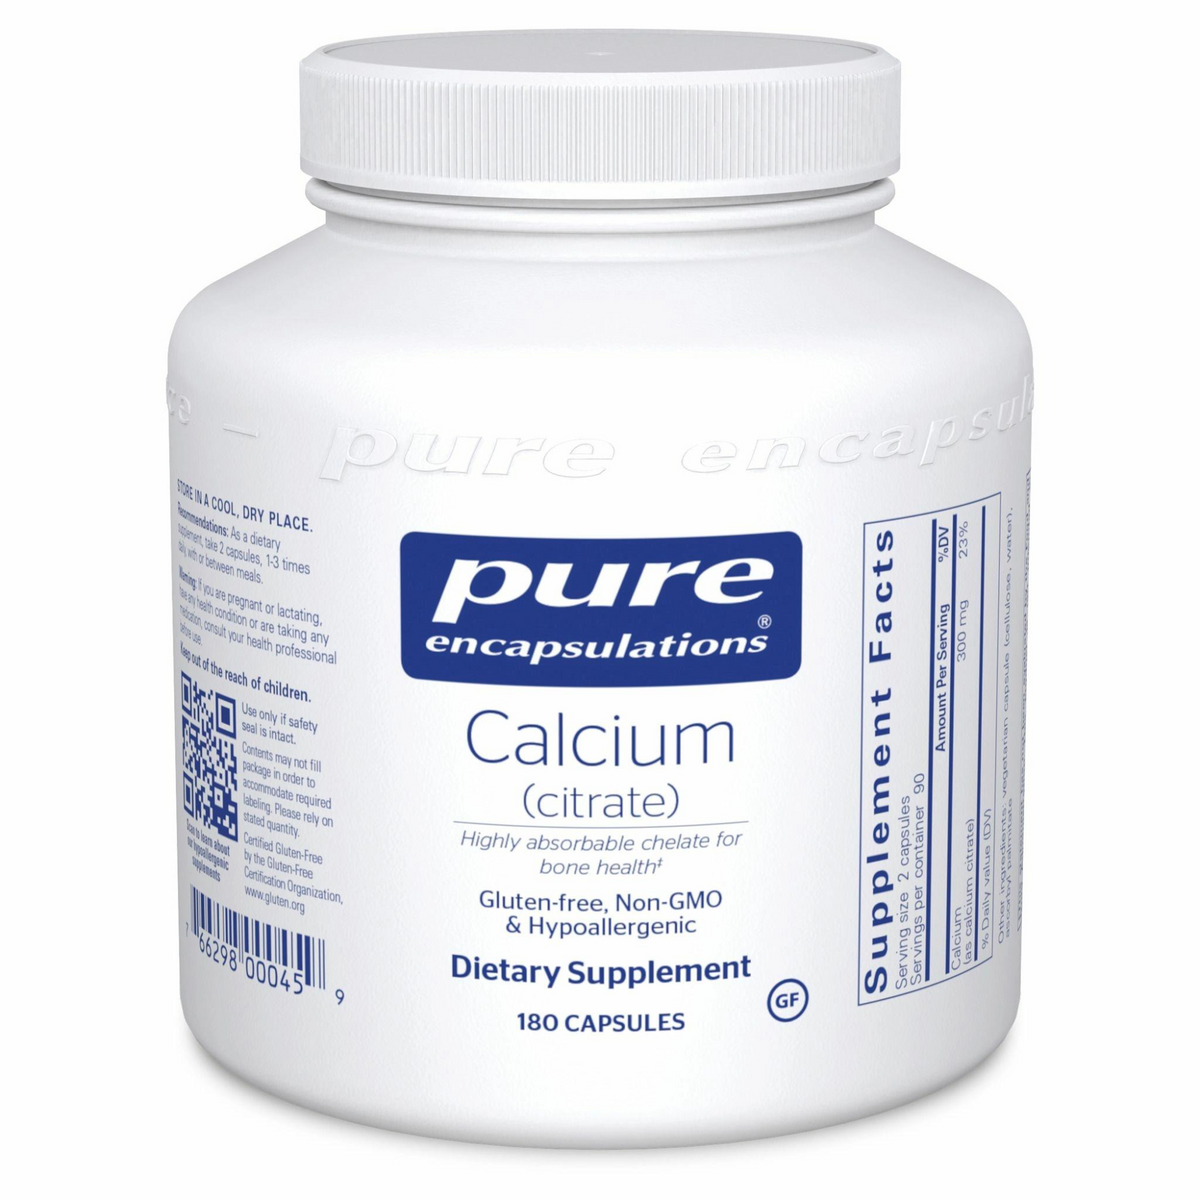 Primary Image of Calcium (citrate) Capsules (180 count)